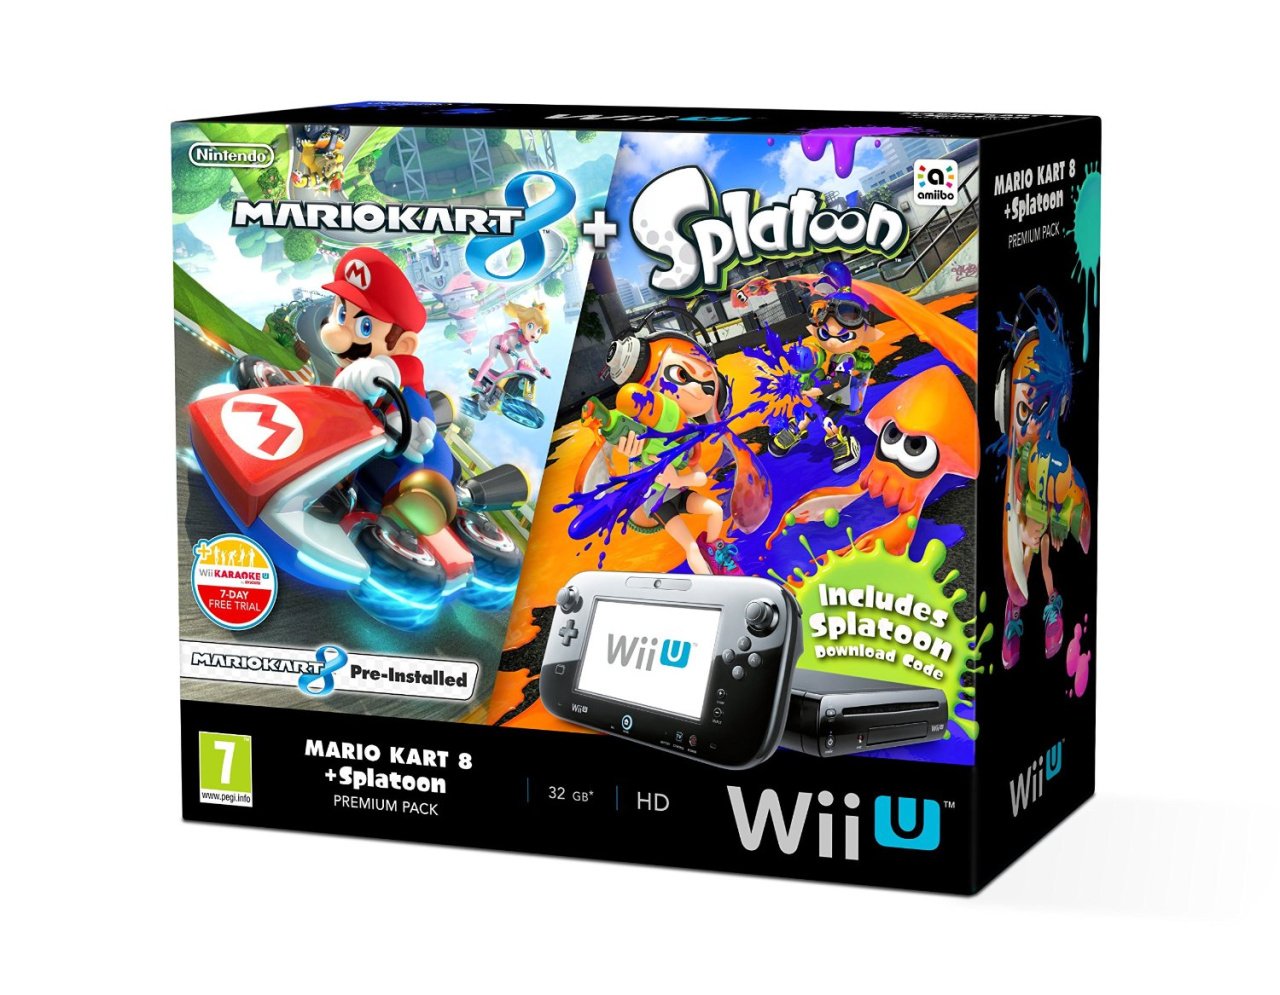 Maestro rekruut twee weken The Splatoon and Mario Kart 8 Wii U Bundle Leads the Way in UK Cyber Monday  Deals | Nintendo Life